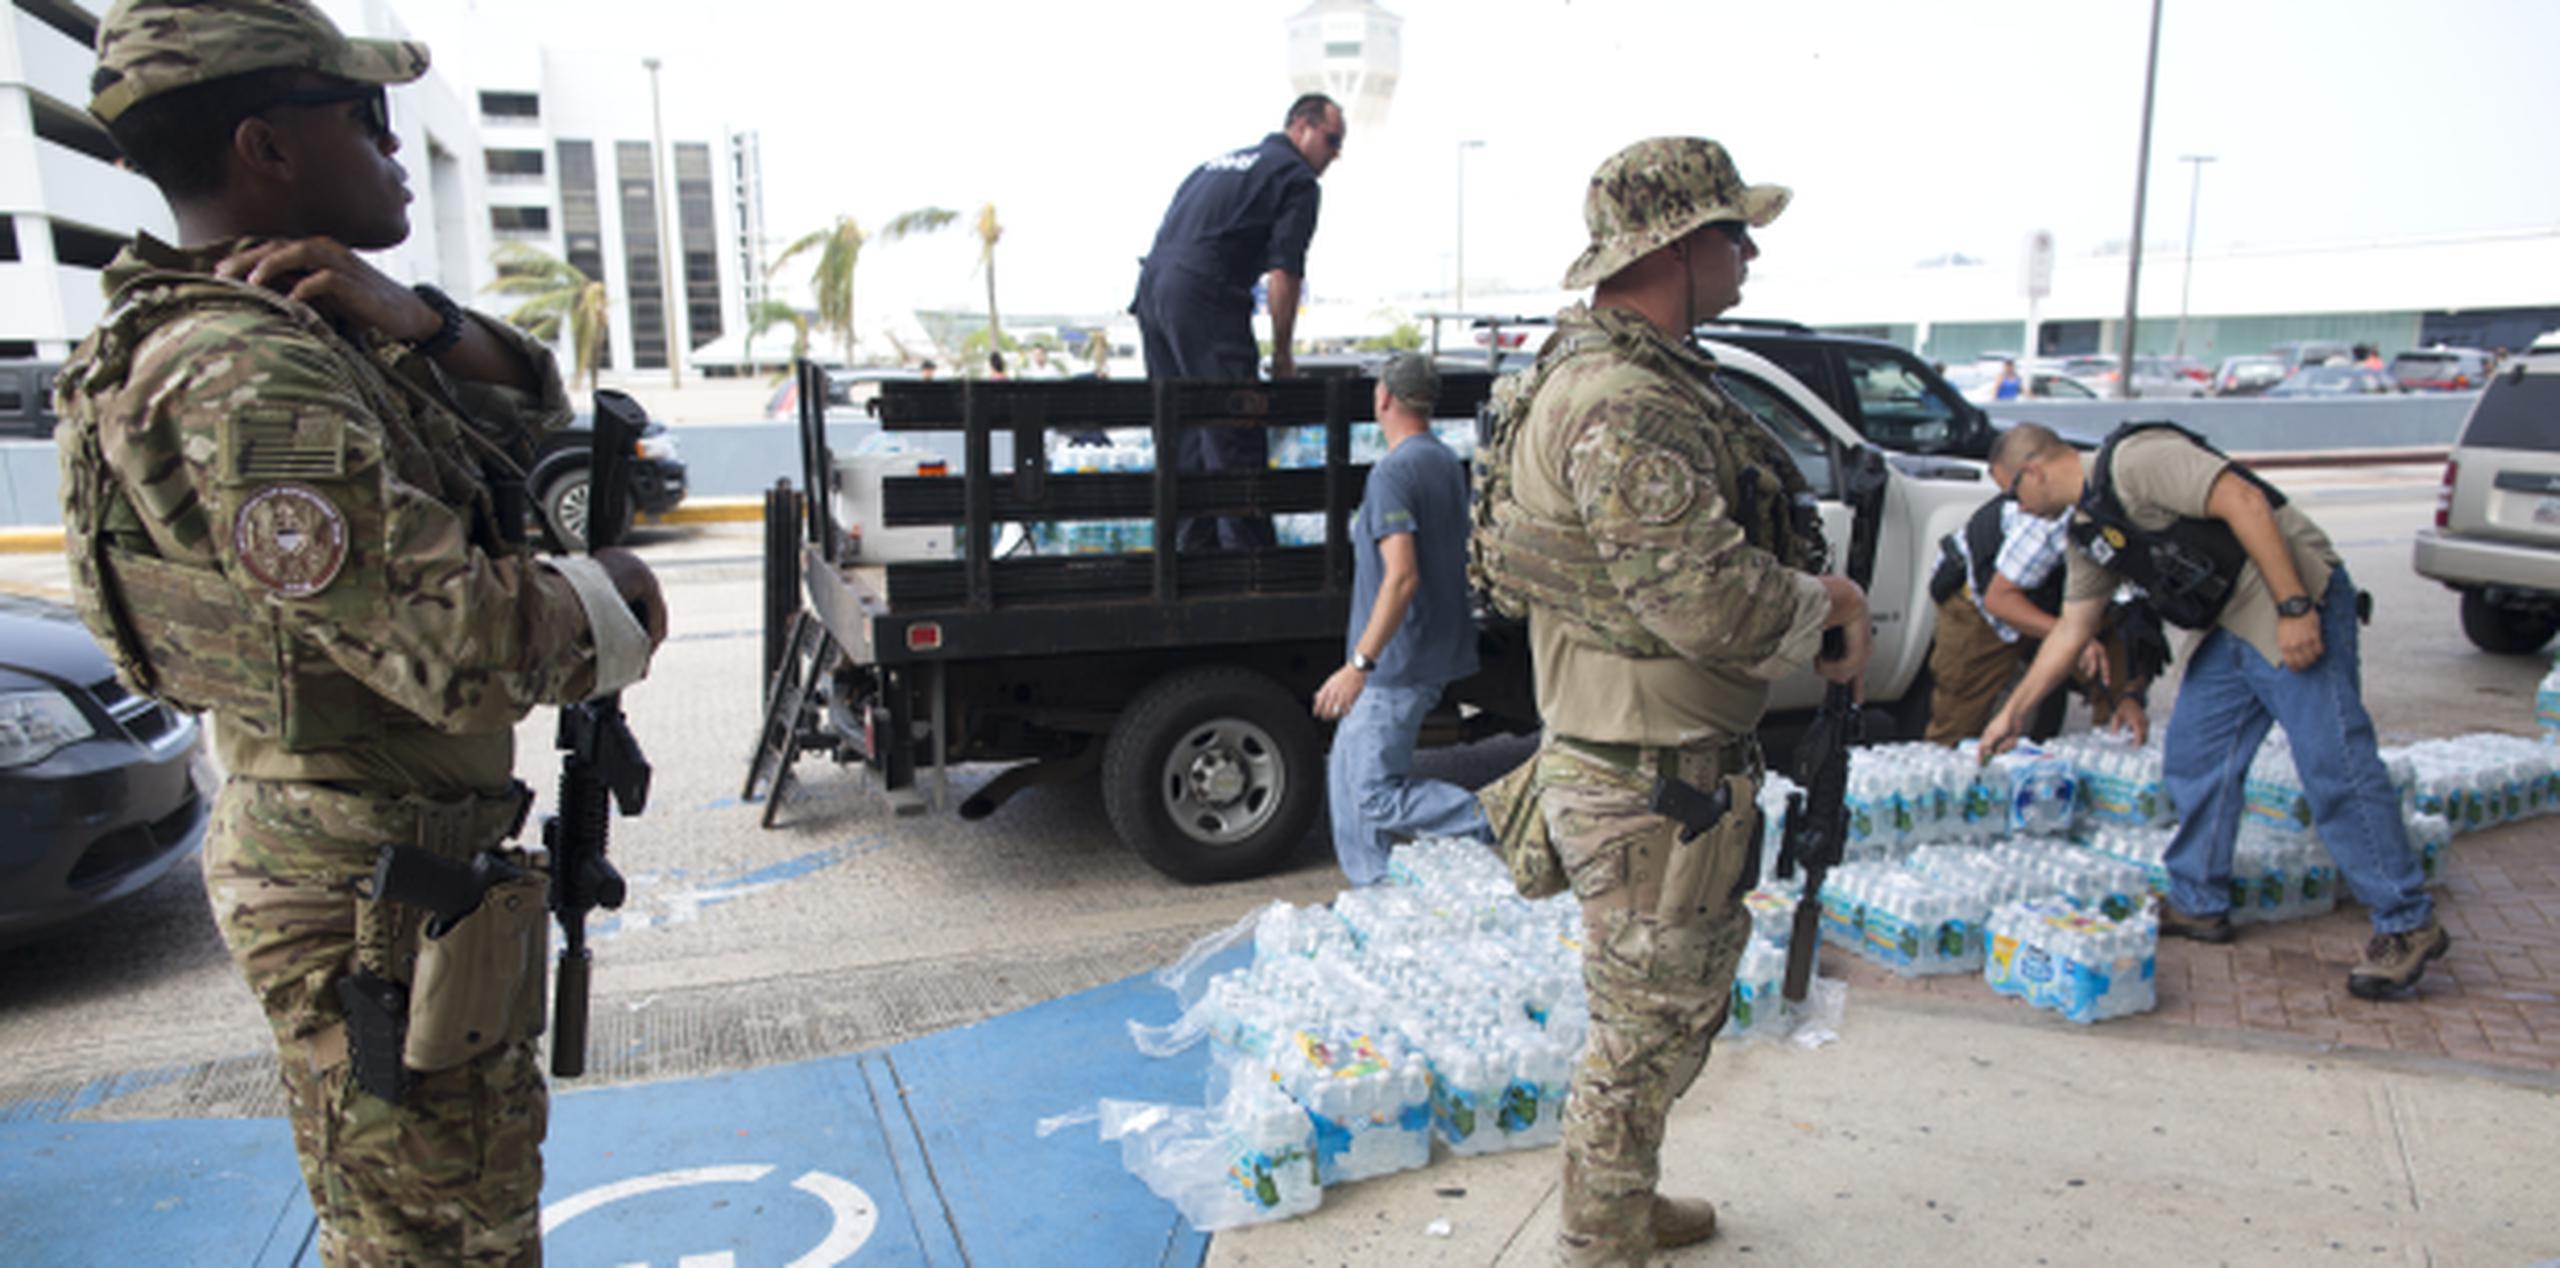 Miembros de la Guardia Nacional han estado colaborando con FEMA en la entrega de suministros. (xavier.araujo@gfrmedia.com)
